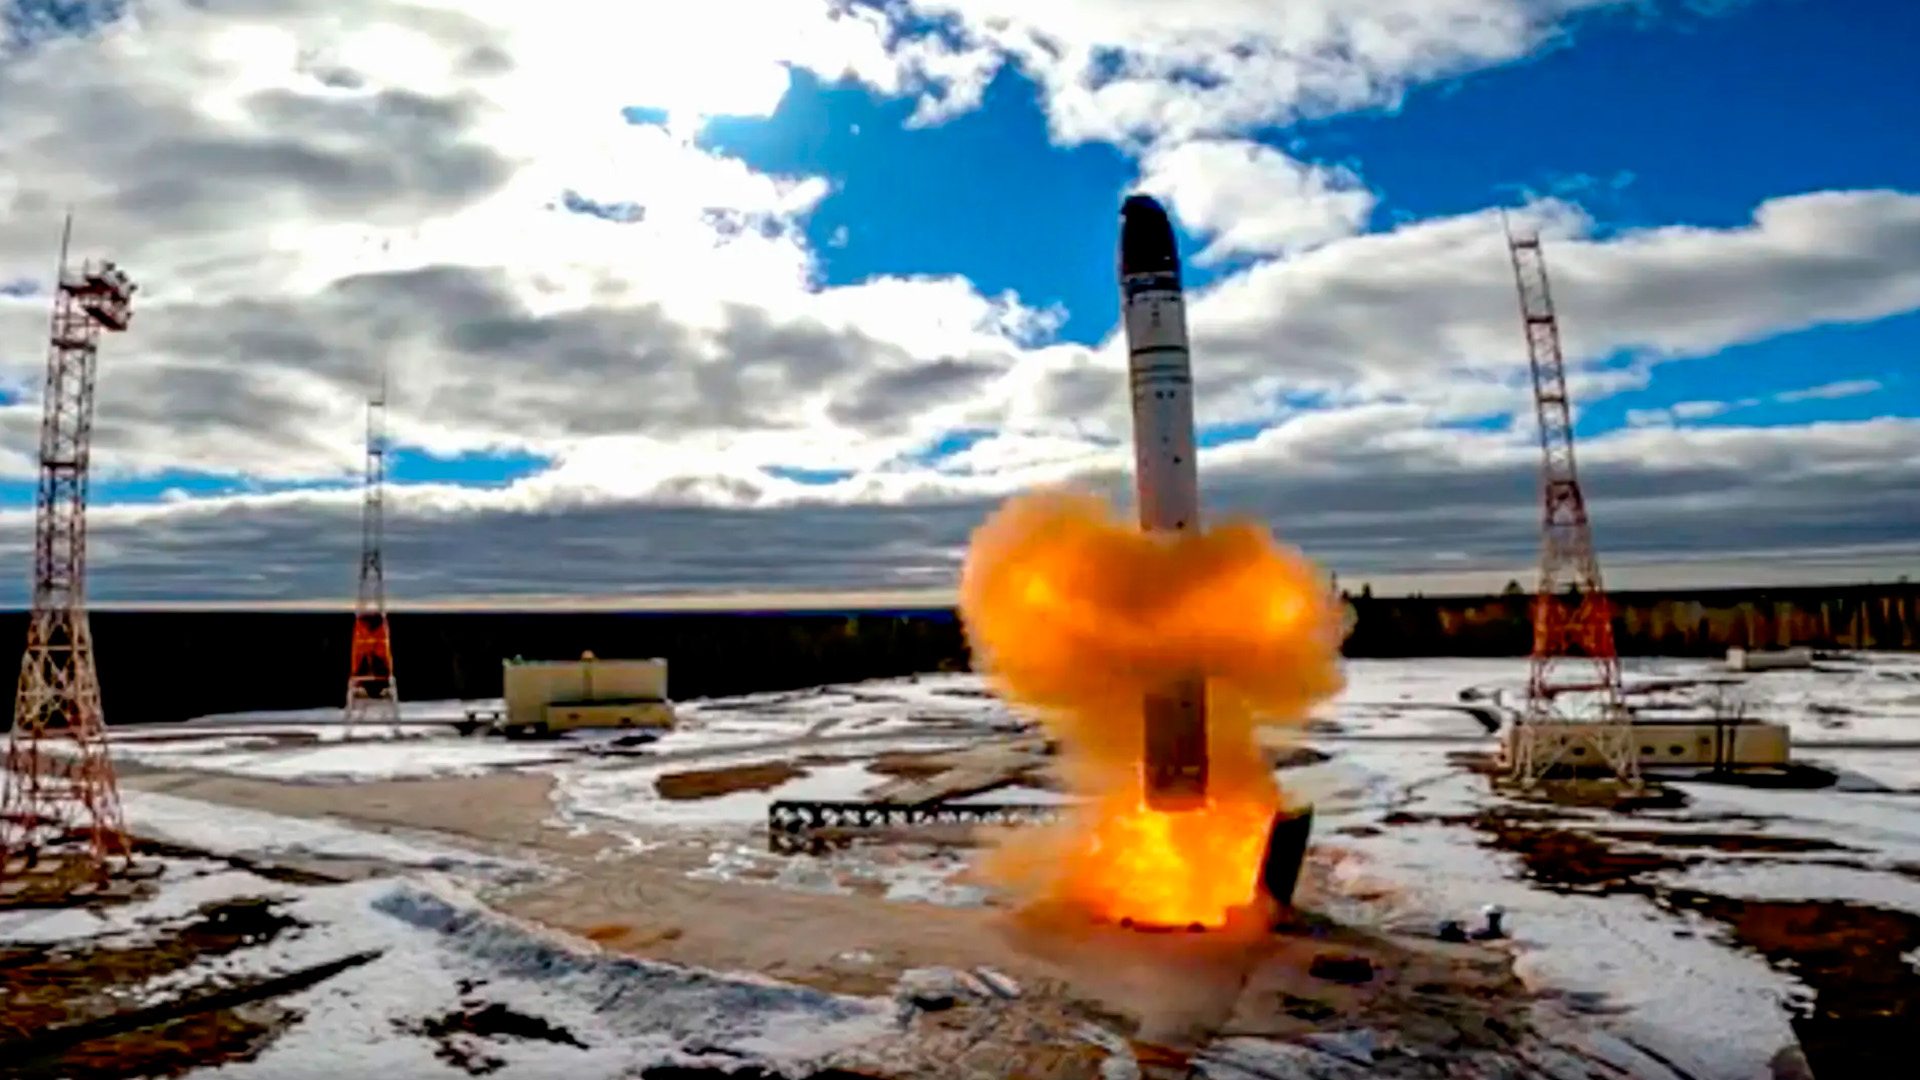 Lanzamiento de un misil de largo alcance con capacidad para llevar una carga nuclear. De acuerdo a los documentos ahora revelados, Putin estuvo dispuesto a ordenar el lanzamiento de una guerra nuclear en Ucrania. (Archivo DEF)